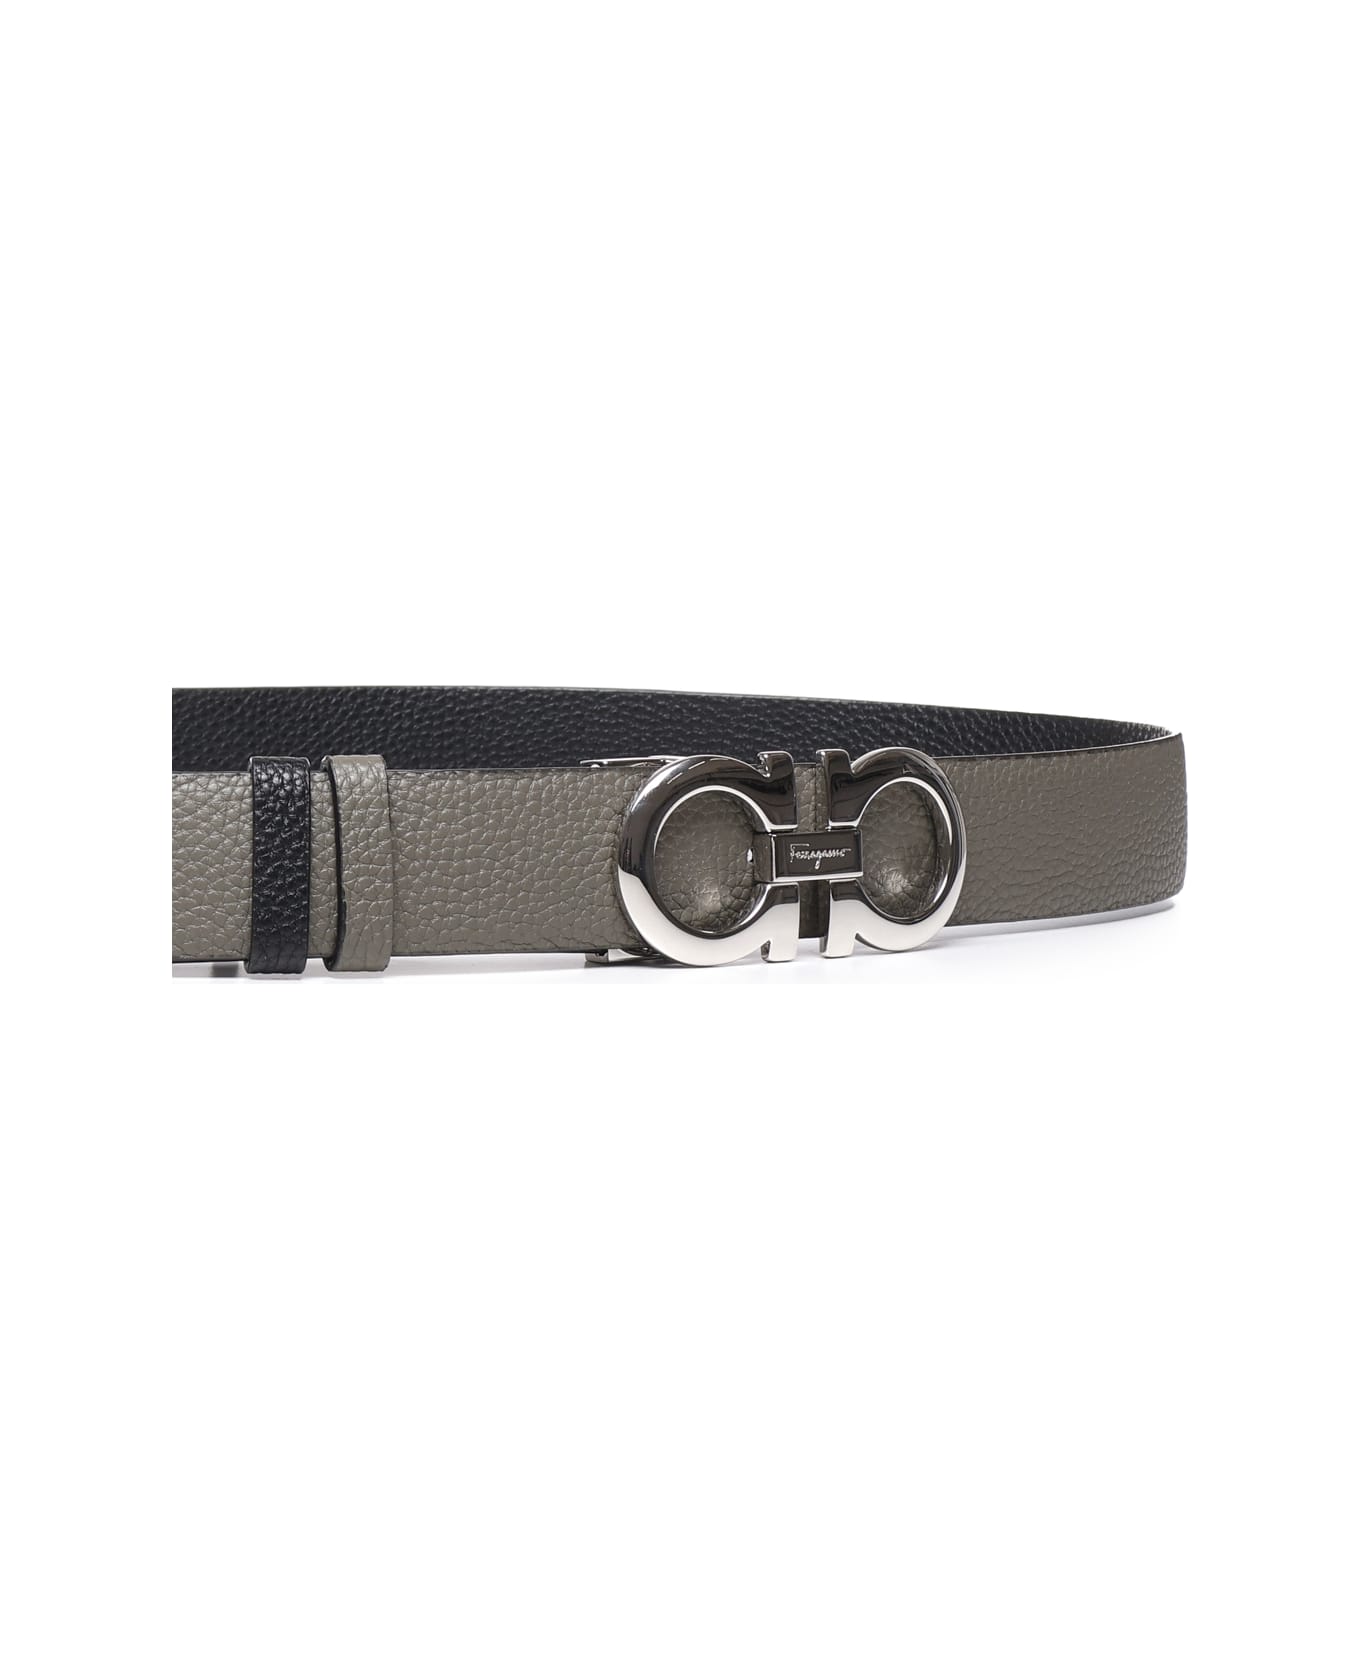 Ferragamo Tumbled Leather Belt With Metal Gancio - Army